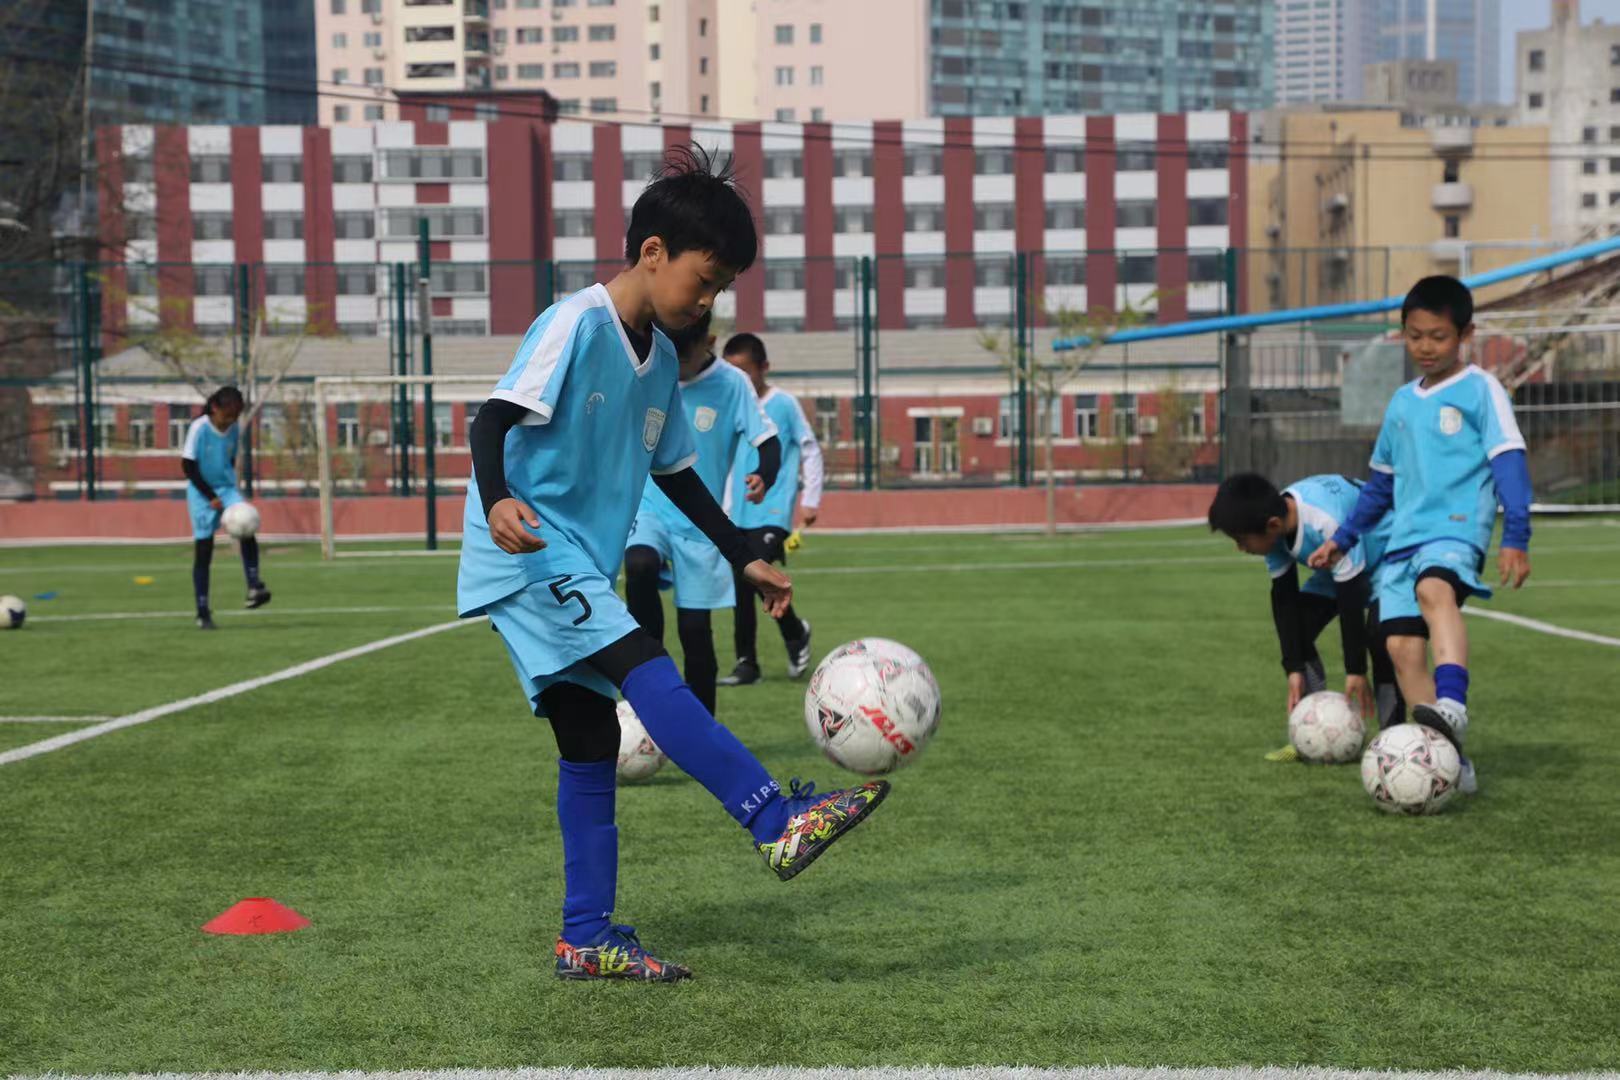 大连实验小学球员在踢球。新华社记者 董意行 摄